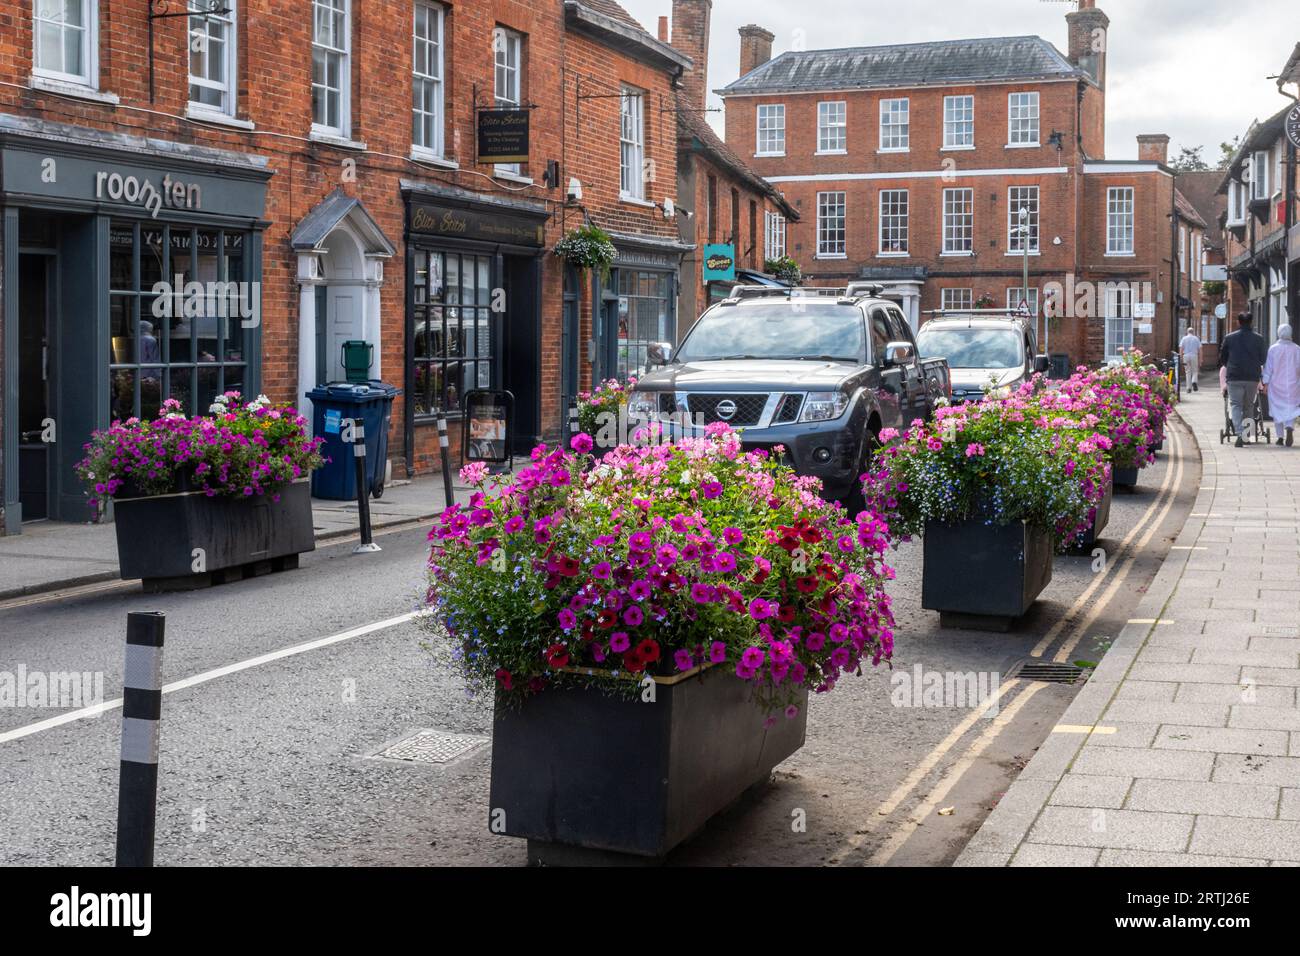 Schema di calmante del traffico, piantatori pieni di fiori posti sulla strada per restringere e rallentare il traffico, centro di Farnham, Surrey, Inghilterra, Regno Unito Foto Stock